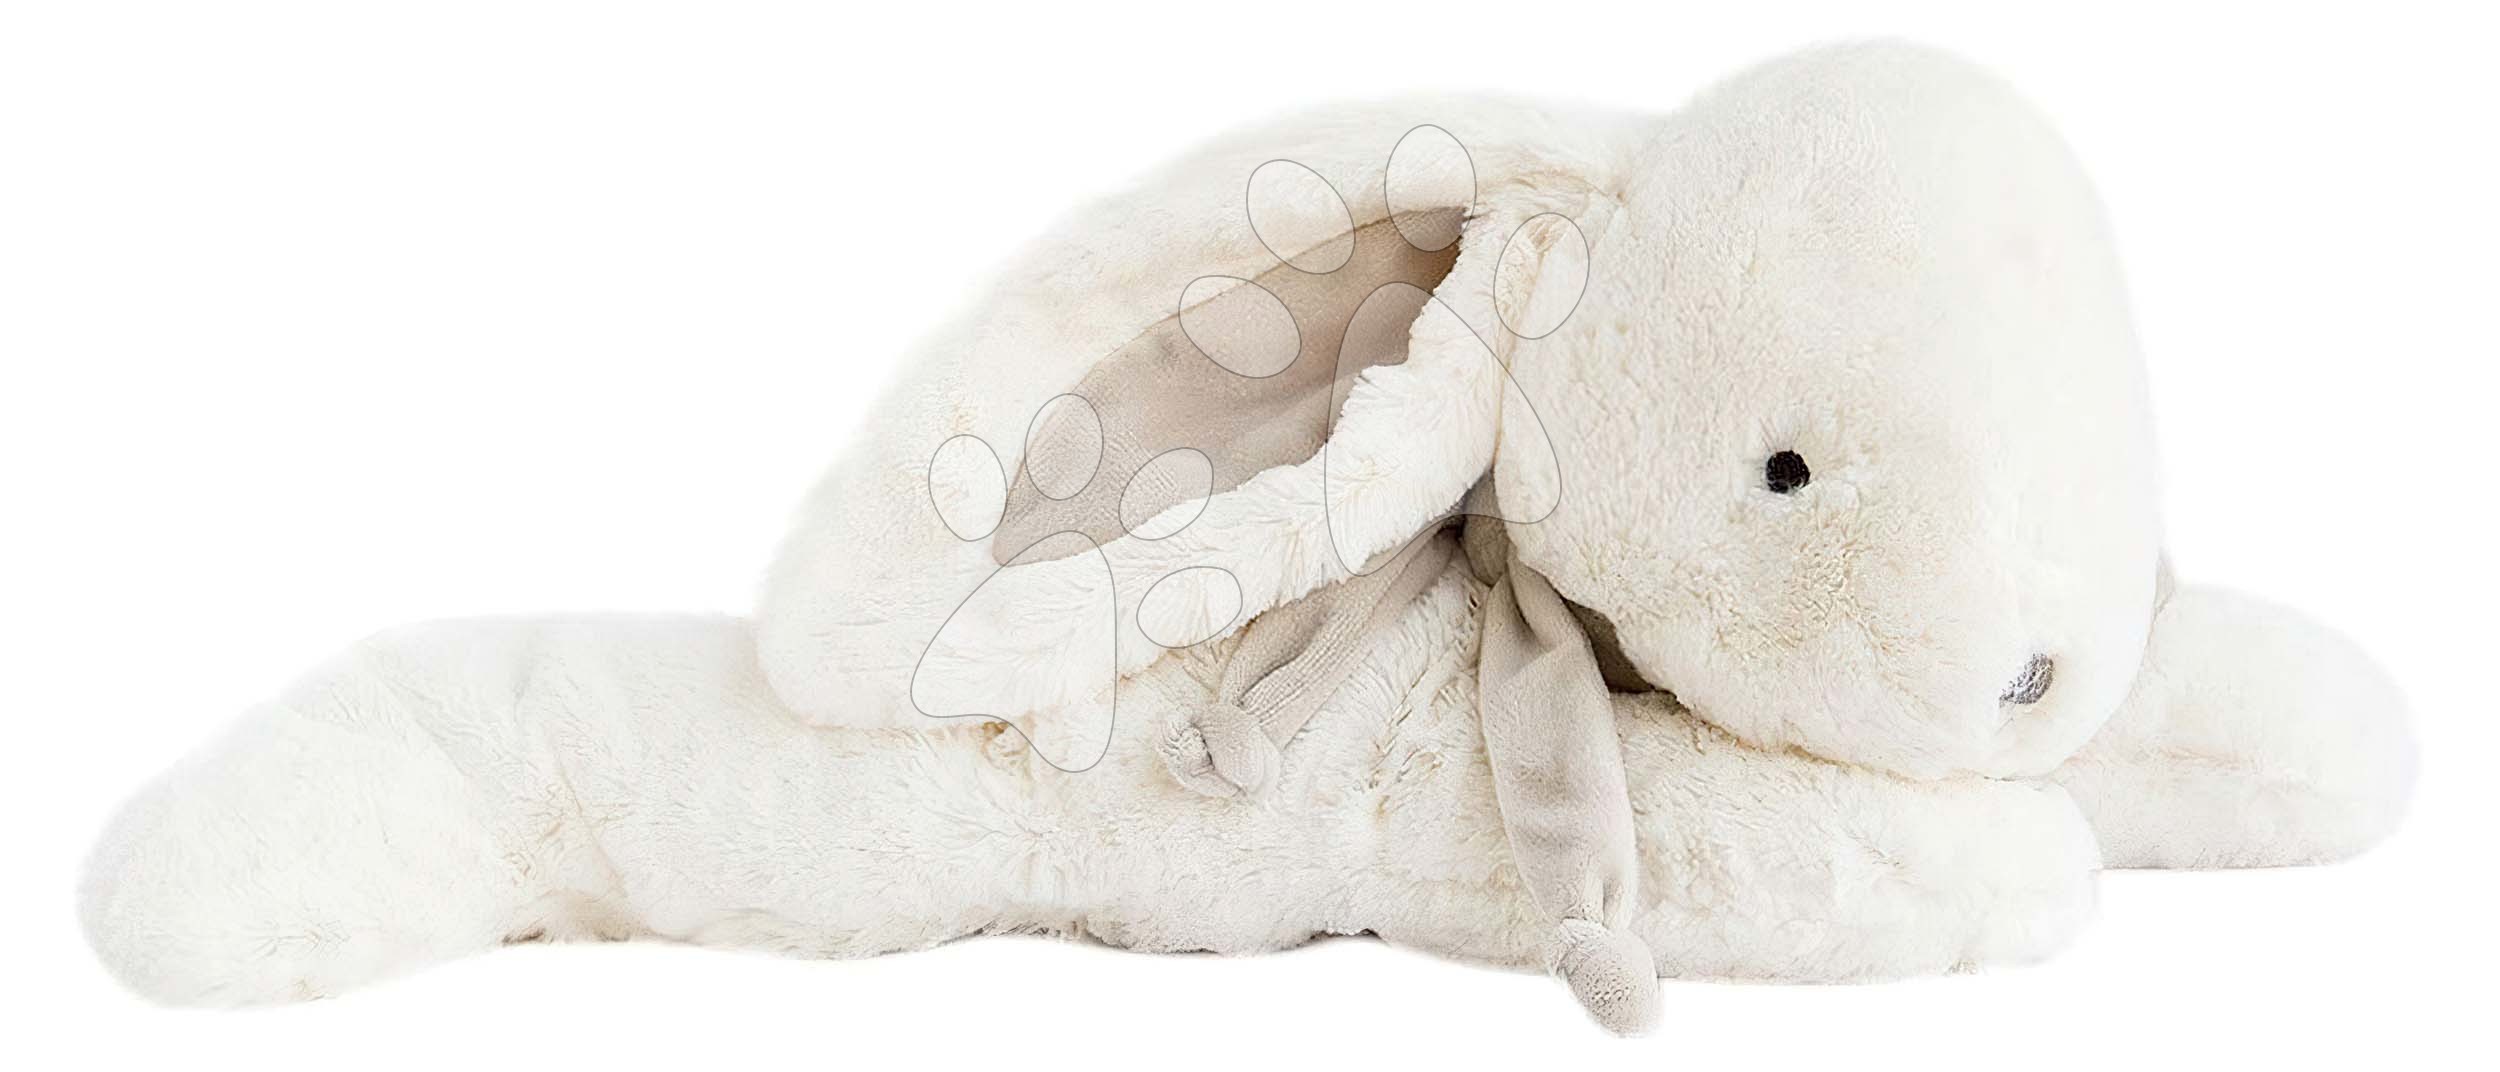 Plyšový zajac Lapin Bonbon Doudou et Compagnie béžový 70 cm v darčekovom balení od 0 mes